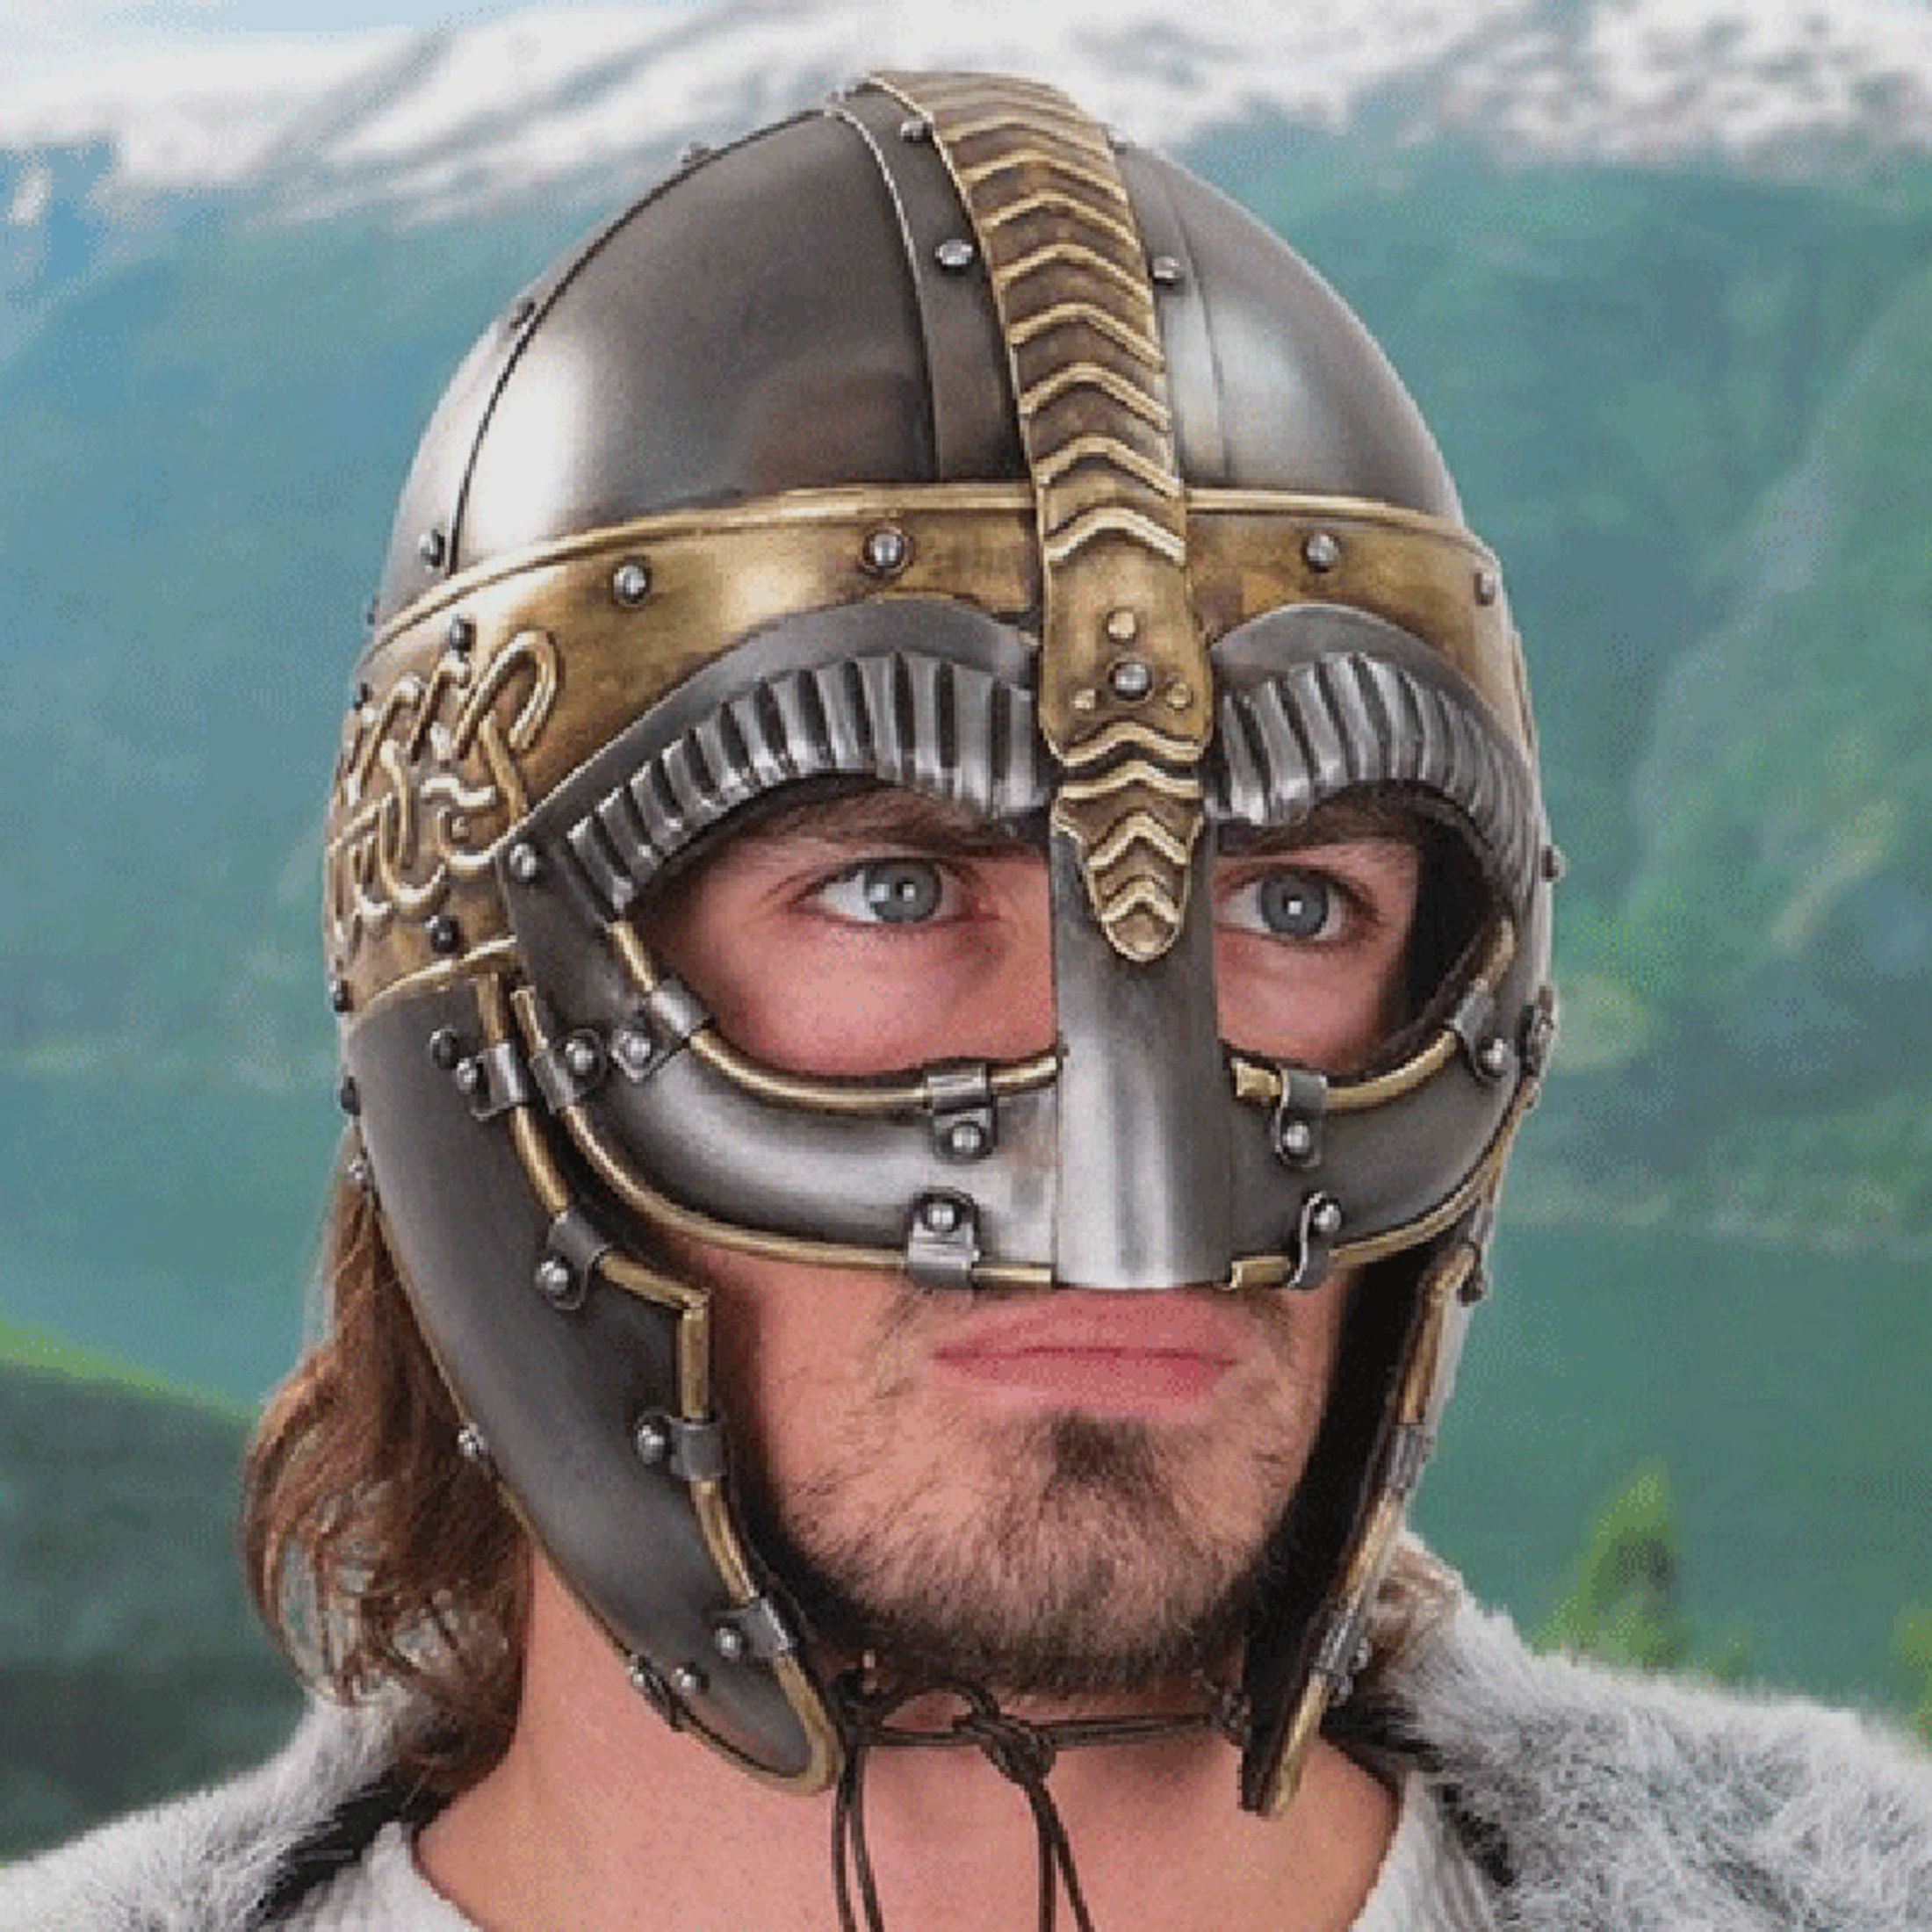 Der Norseman Helm | 41383